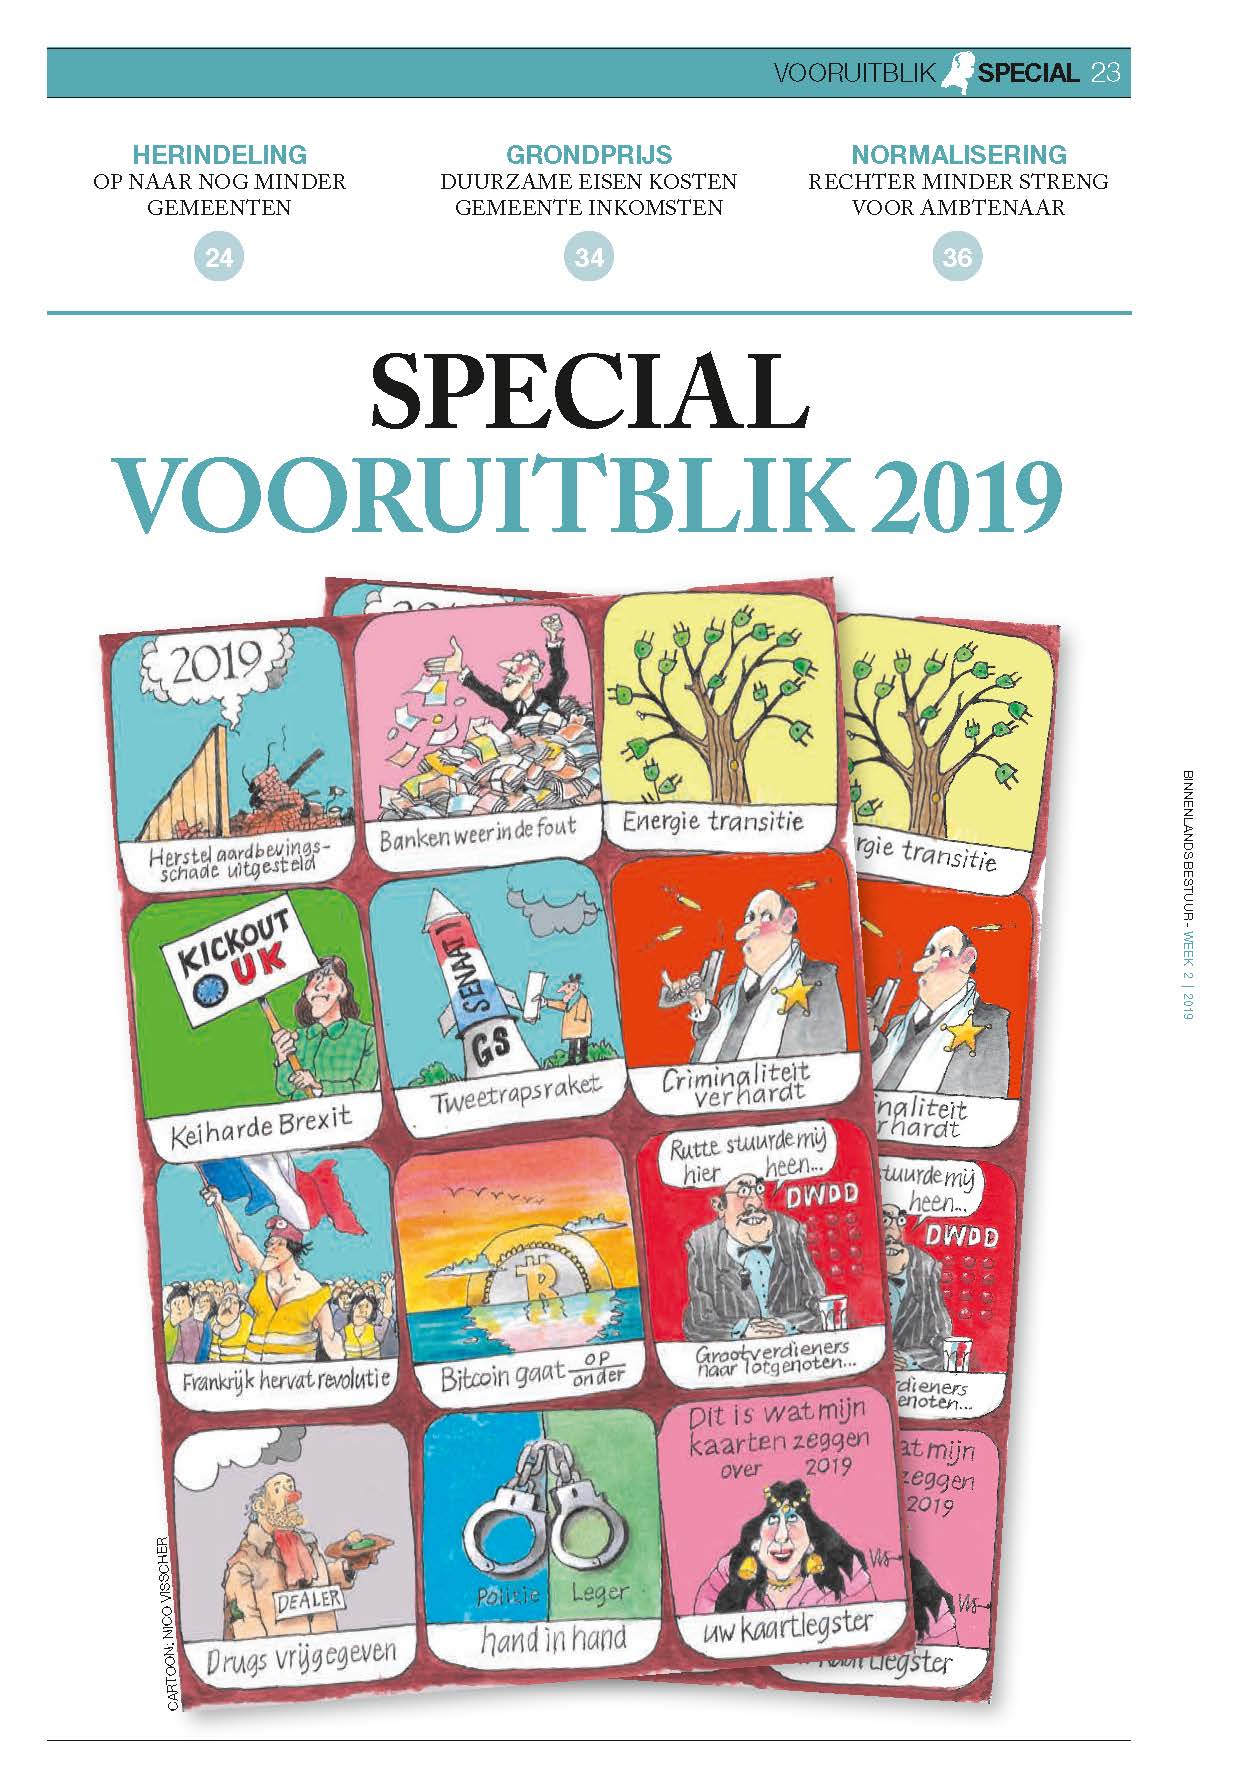 BB-01-2019-Special-Vooruitblik-2019---cover.jpg